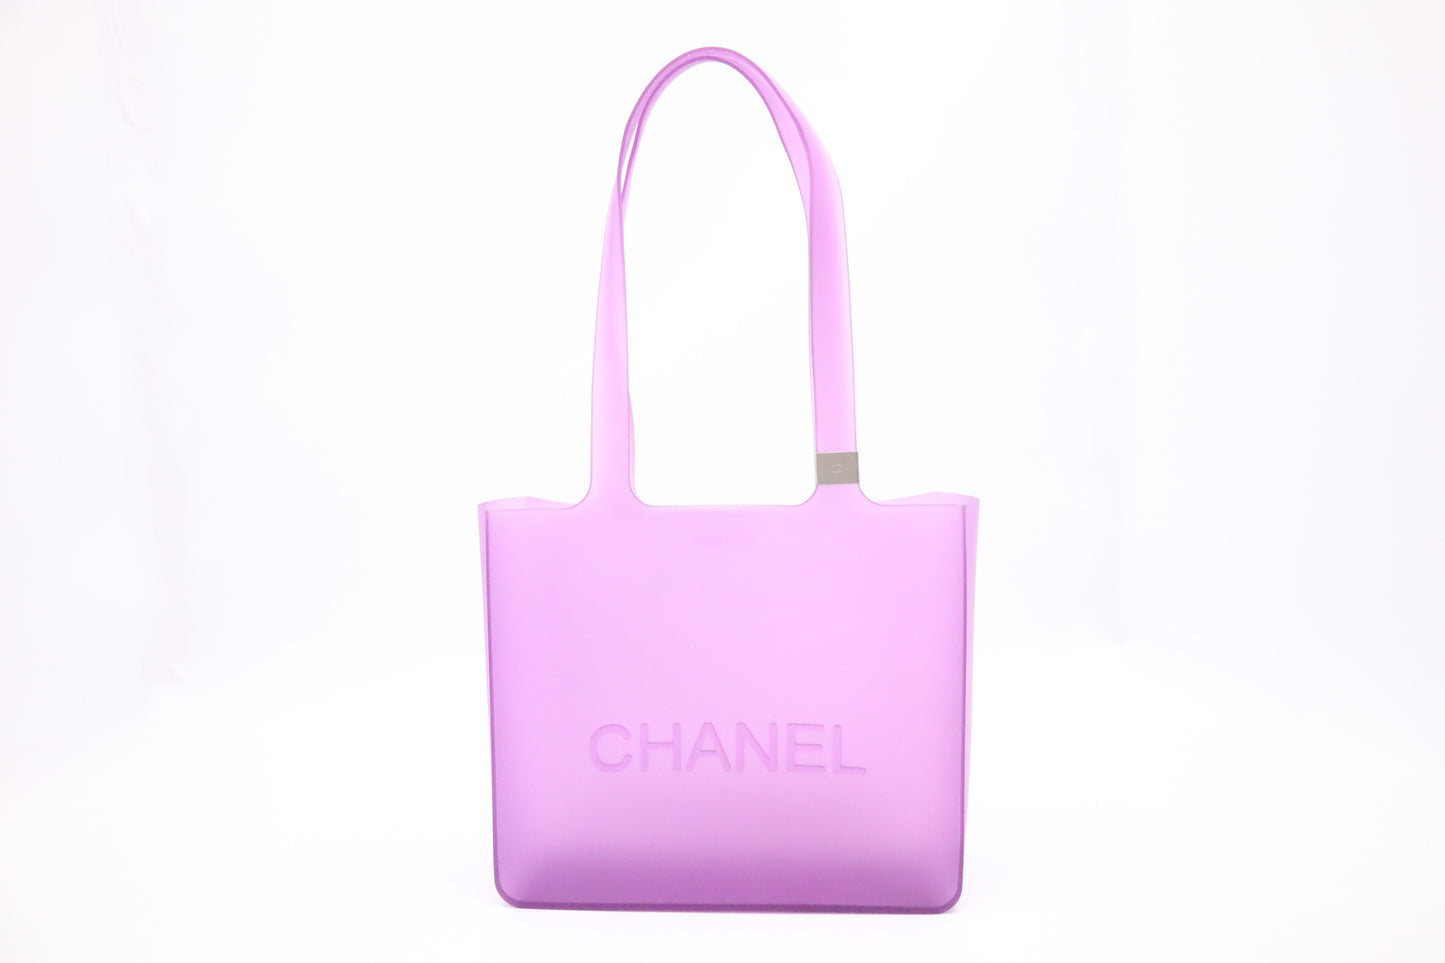 Chanel Small Tote in Purple Rubber